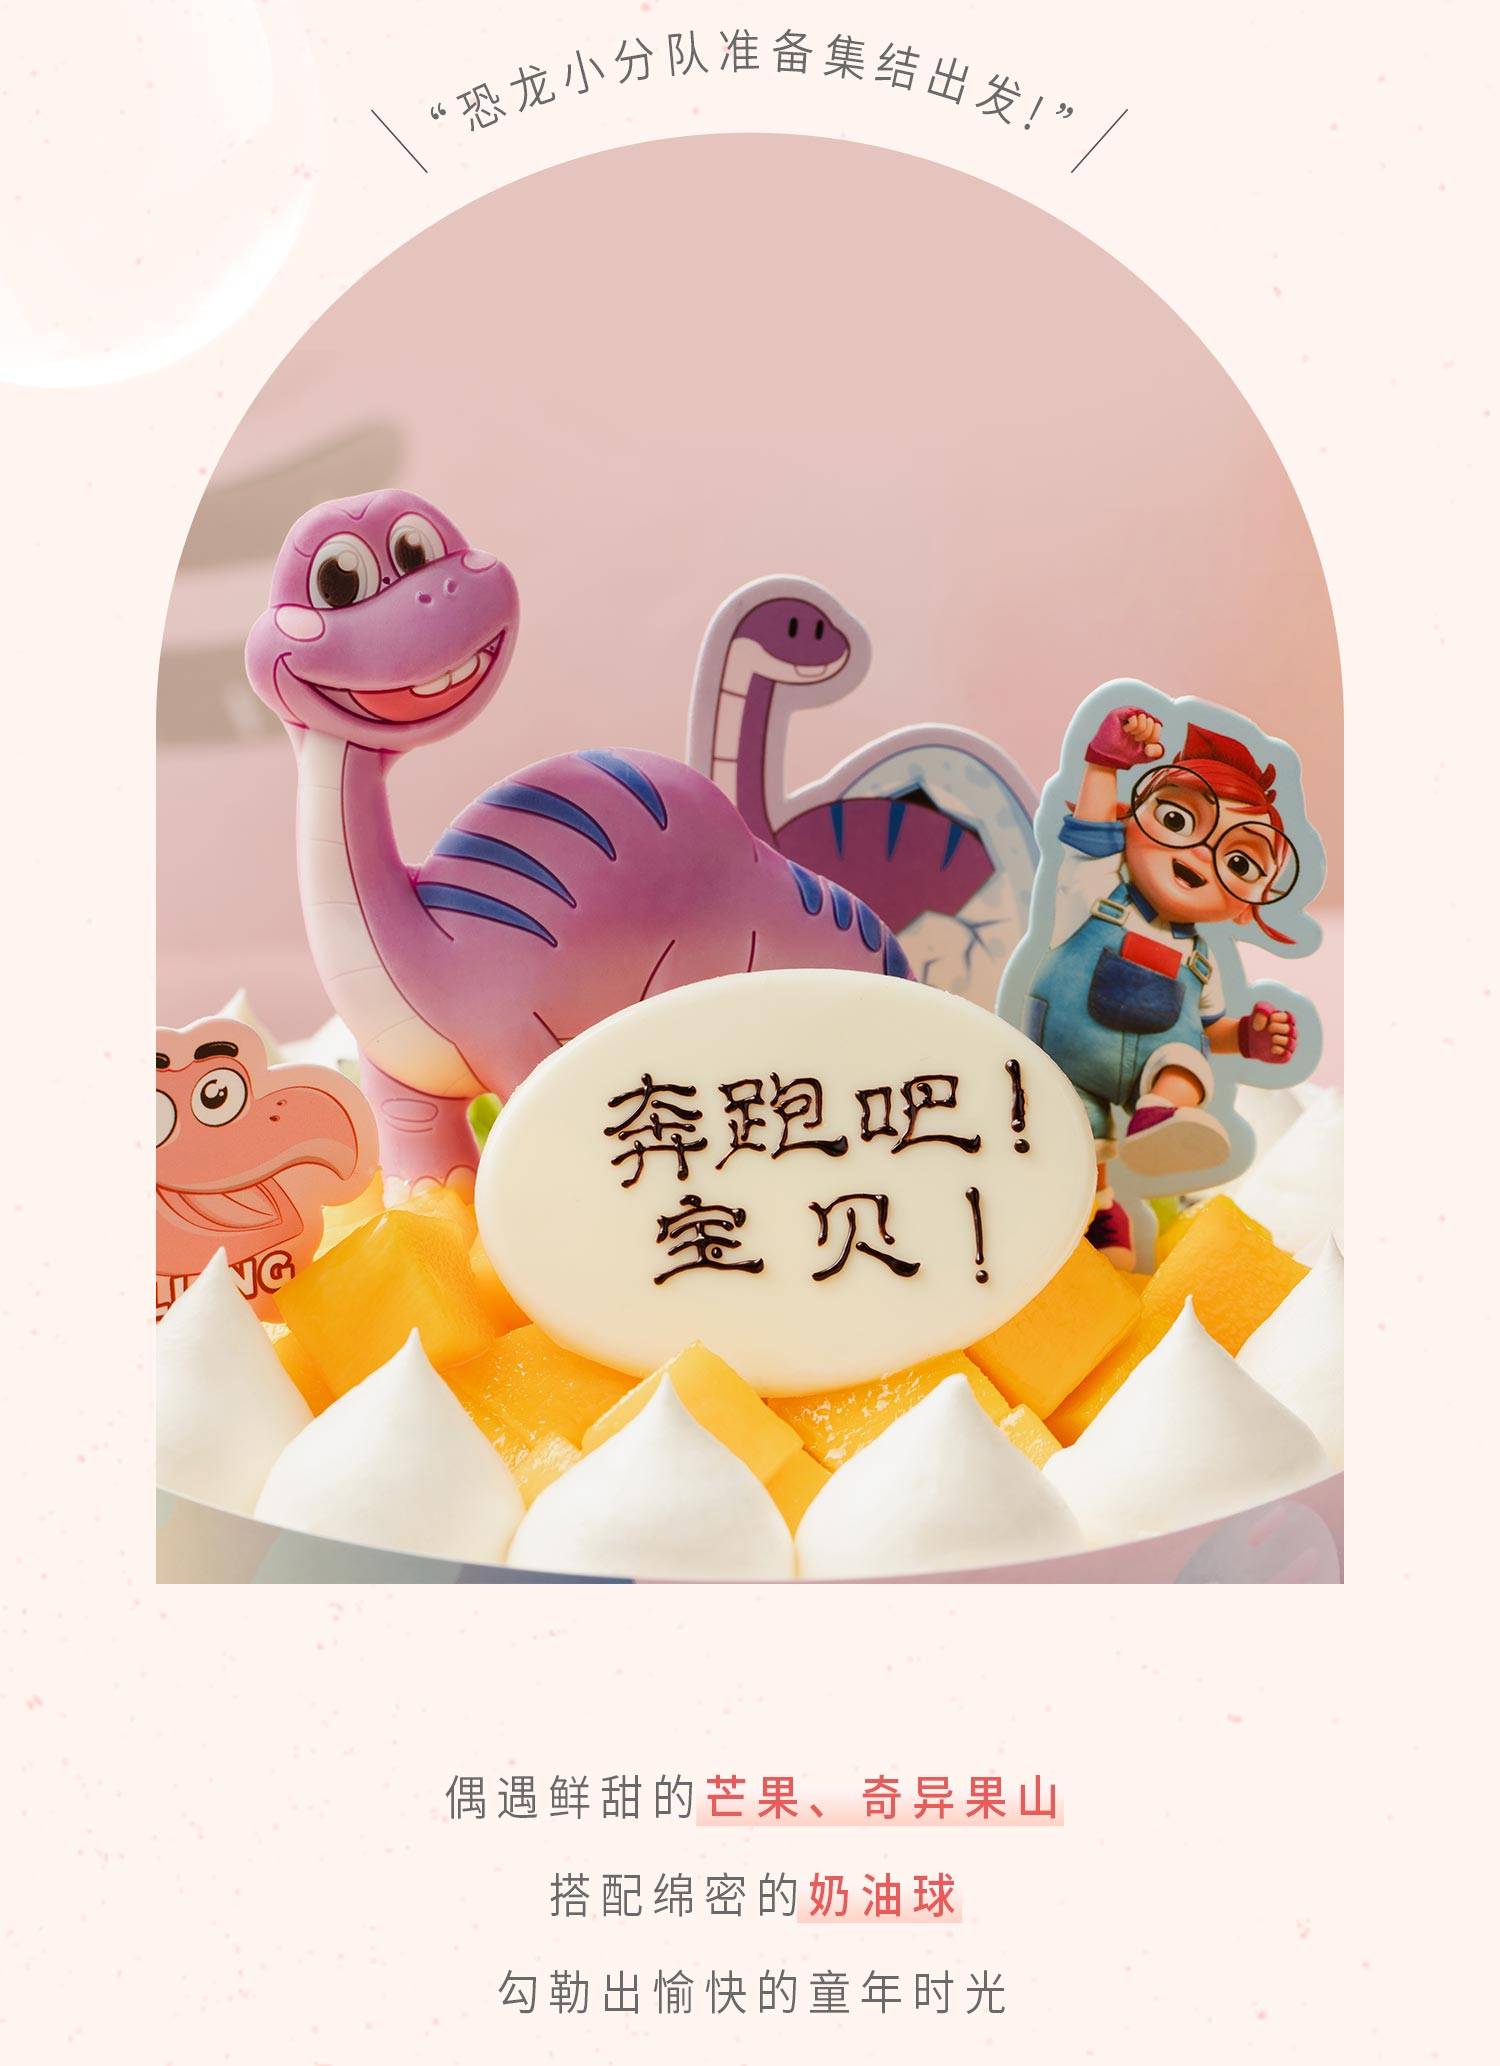 恐龙快跑_幸福西饼蛋糕预定_加盟幸福西饼_深圳幸福西饼官方网站